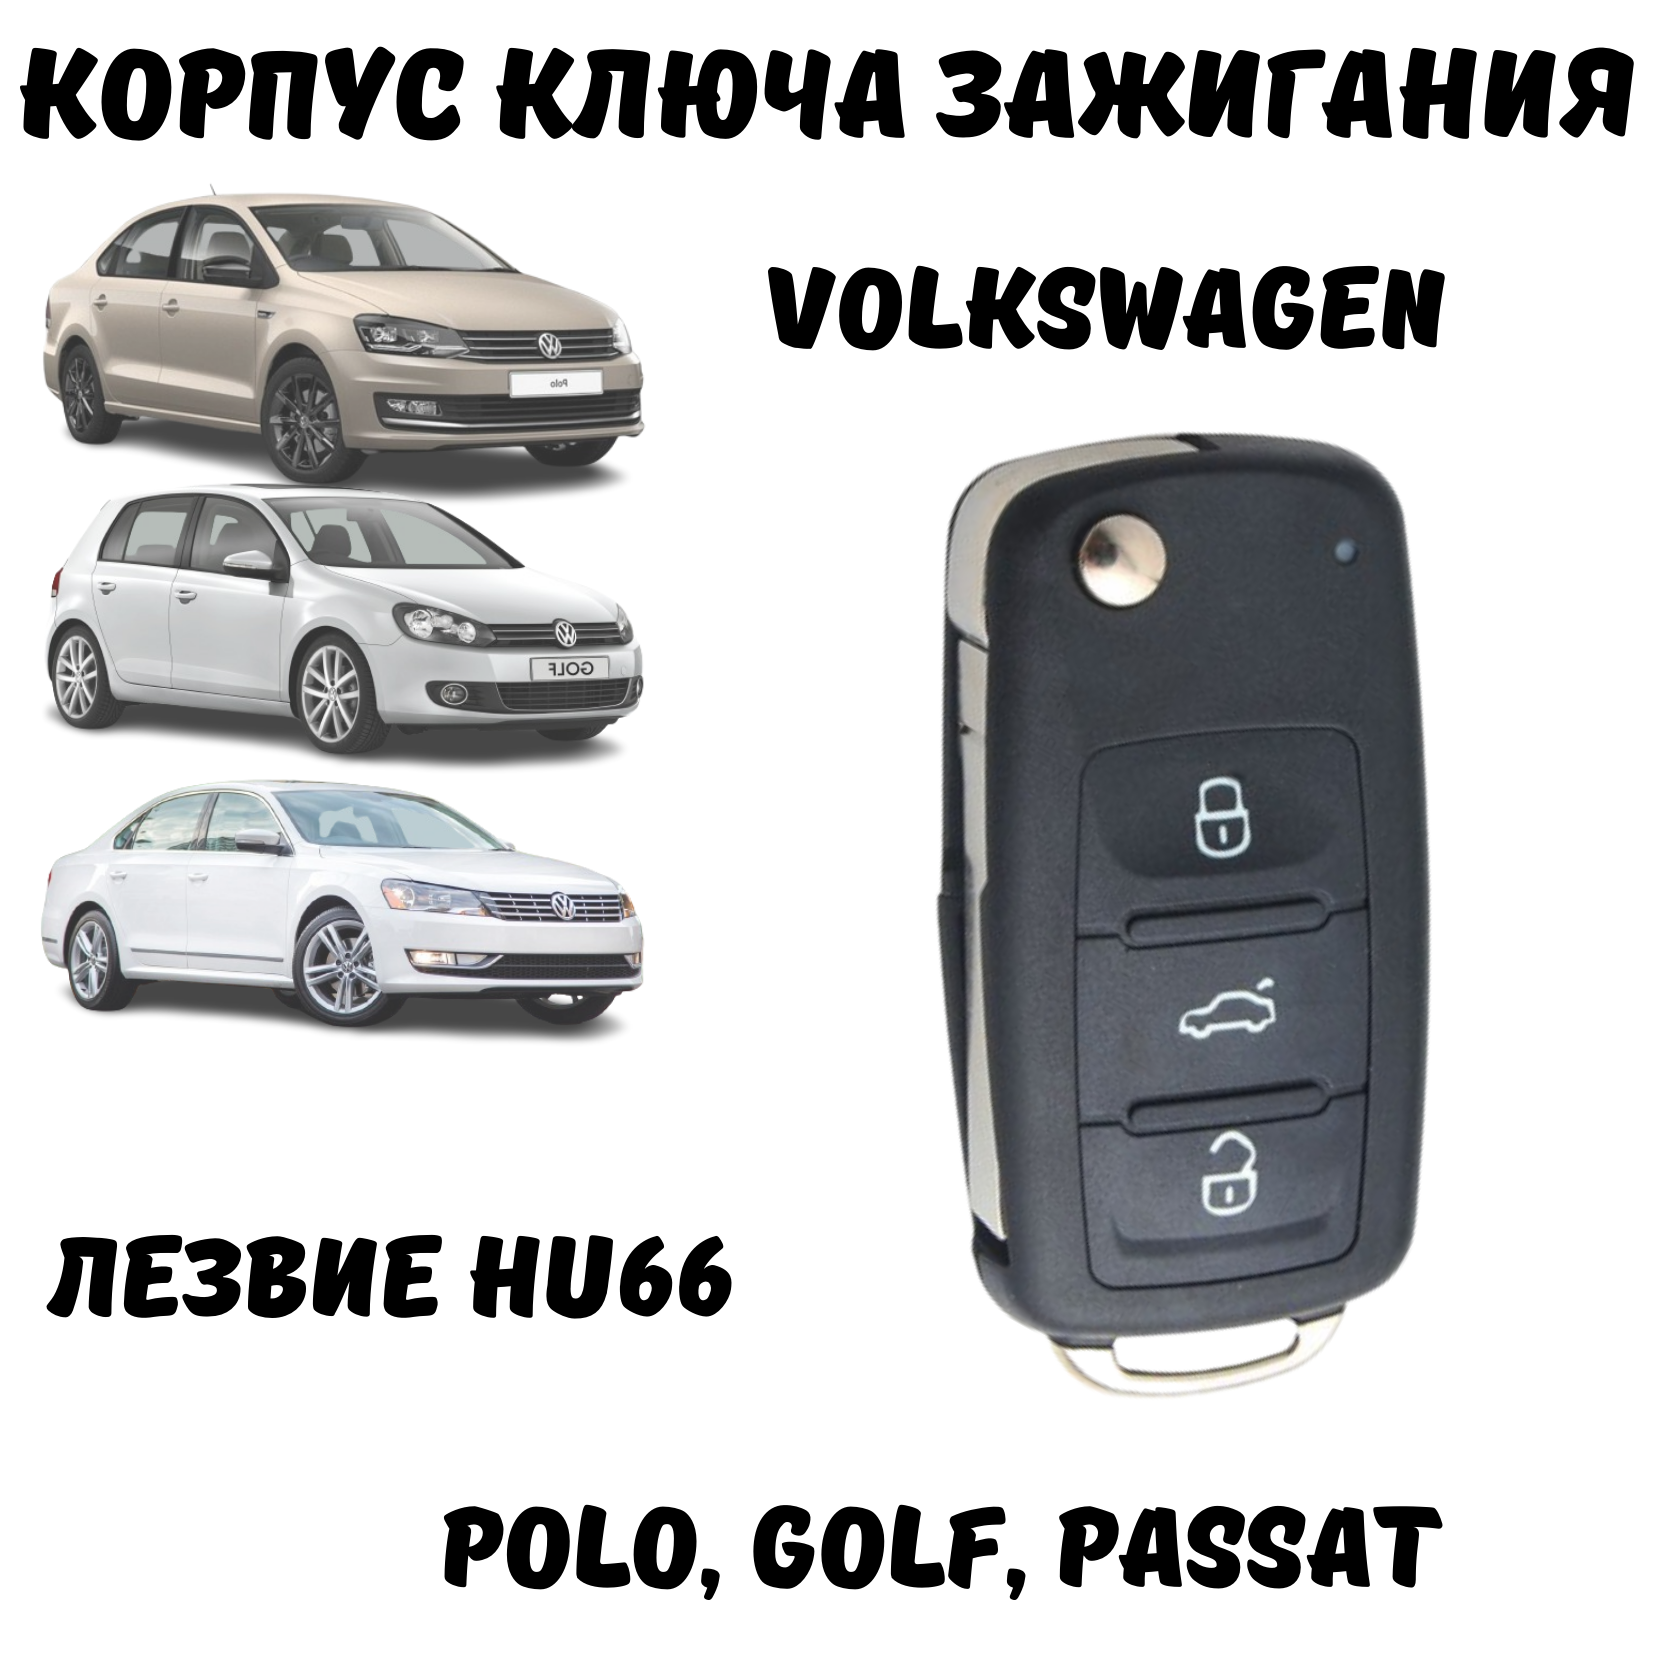 Корпус для ключа зажигания Volkswagen Polo Golf Passat лезвие HU66 3 кнопки